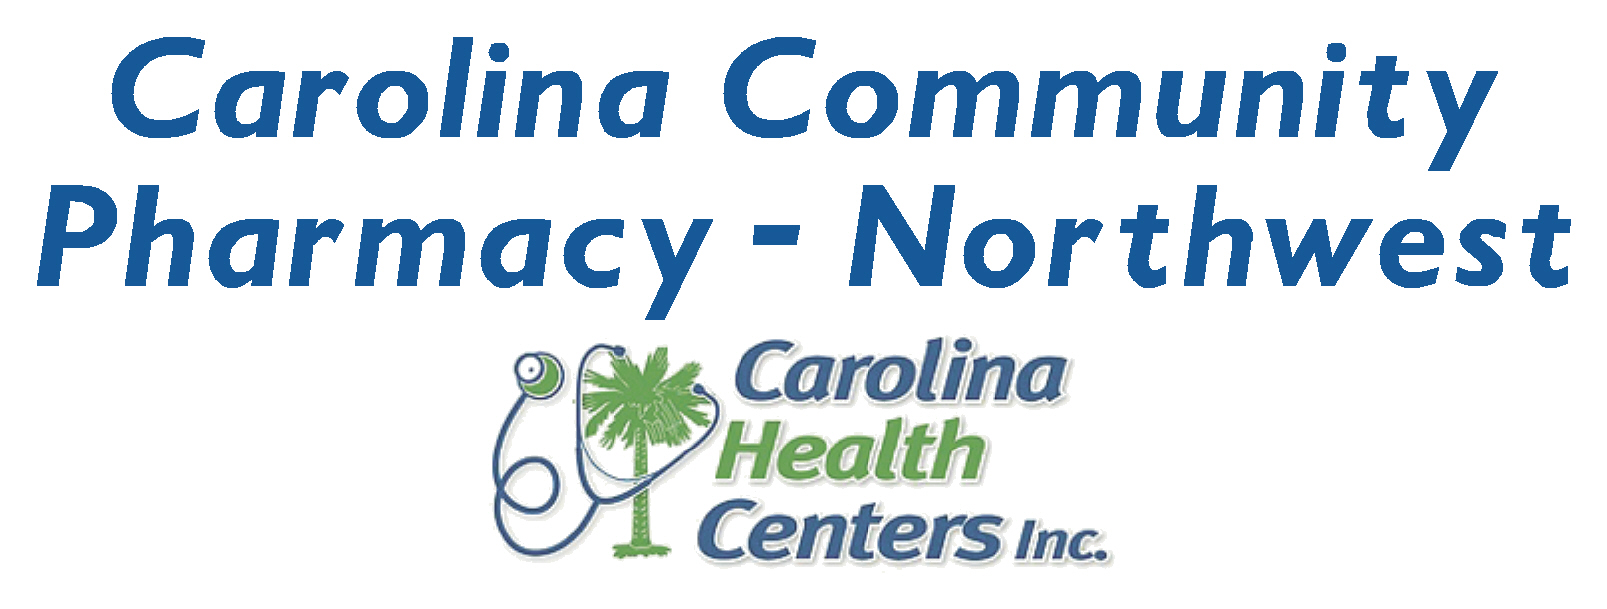 Carolina Community Pharmacy Northwest